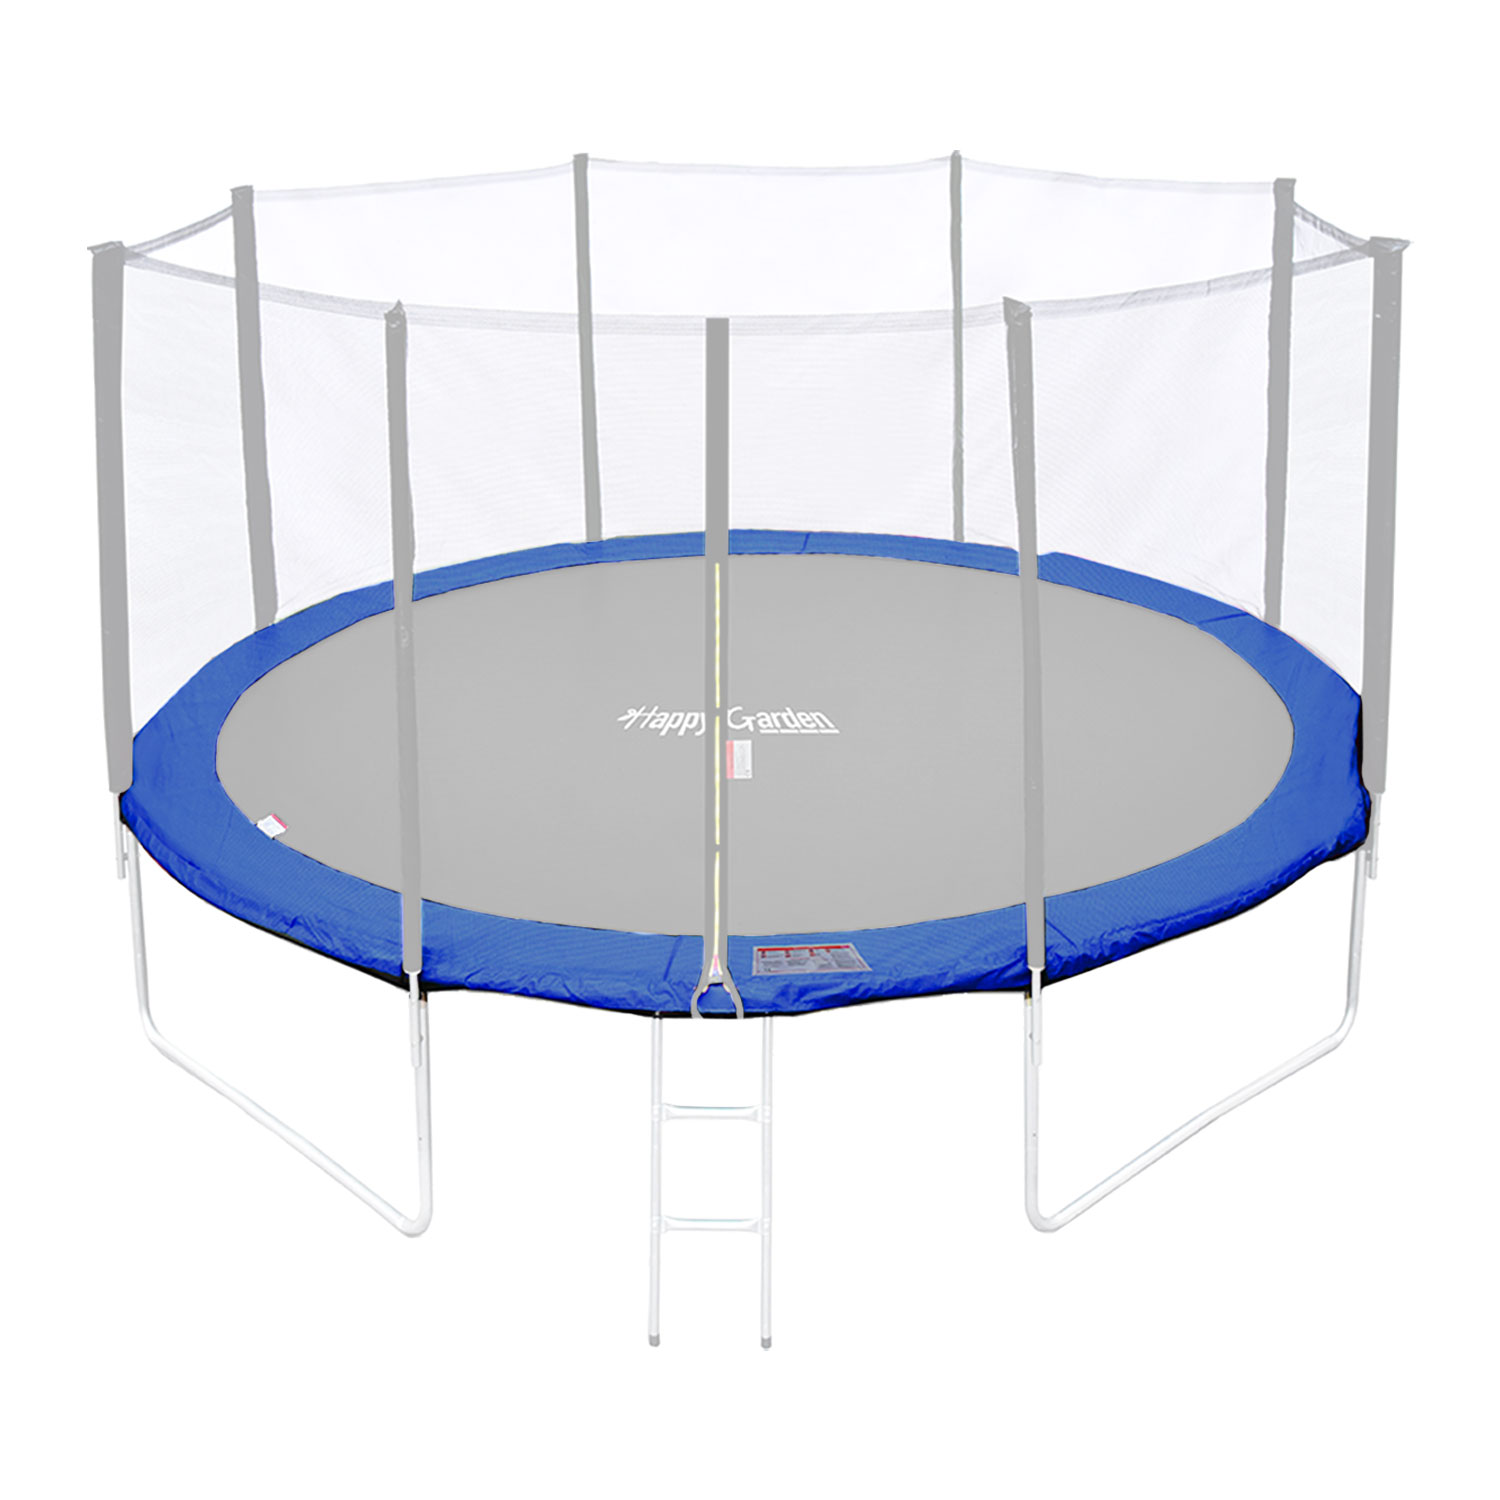 Matelas de protection réversible pour trampoline Ø370cm PERTH - vert/bleu